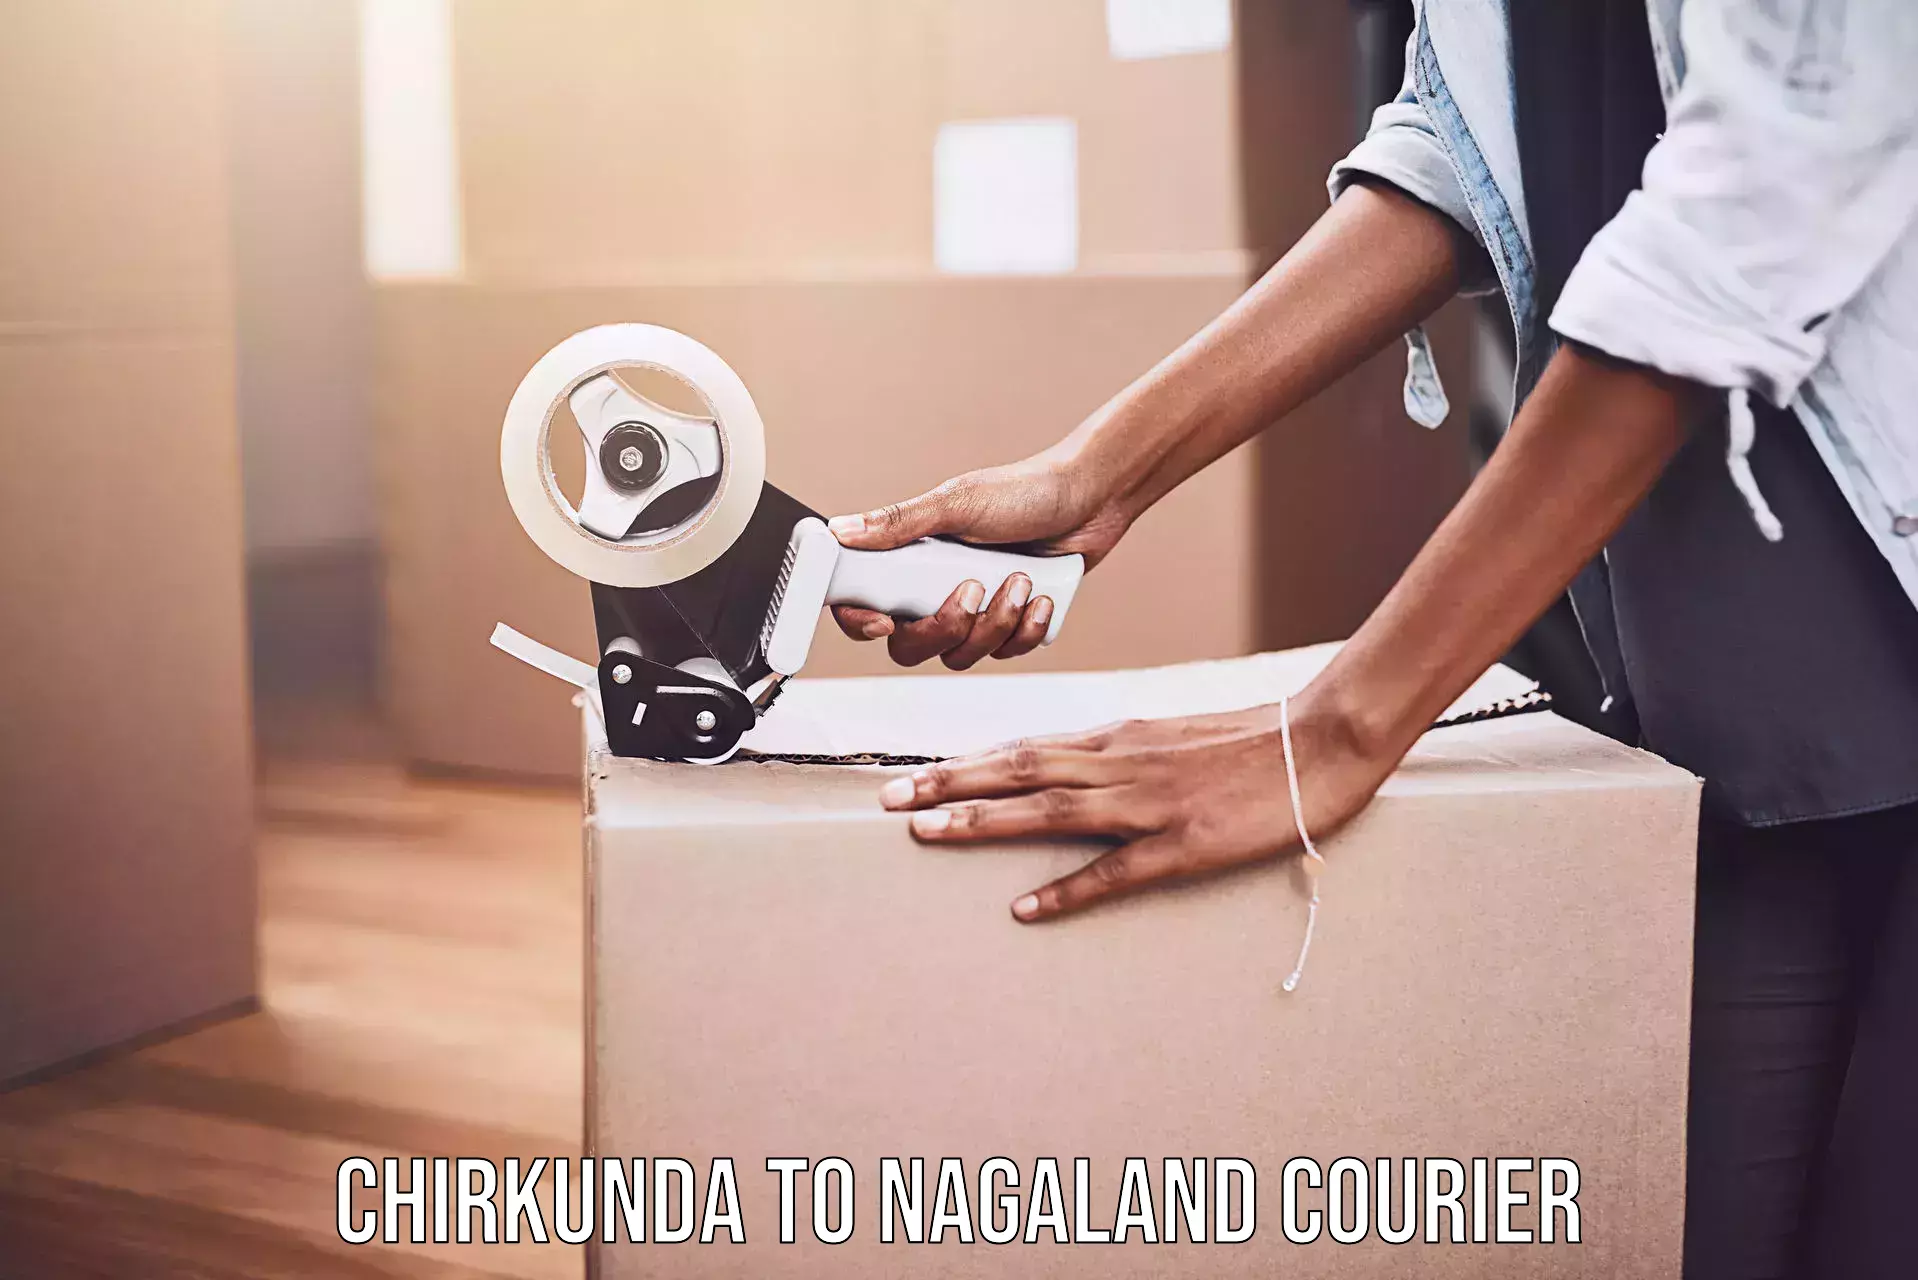 Efficient order fulfillment Chirkunda to Longleng